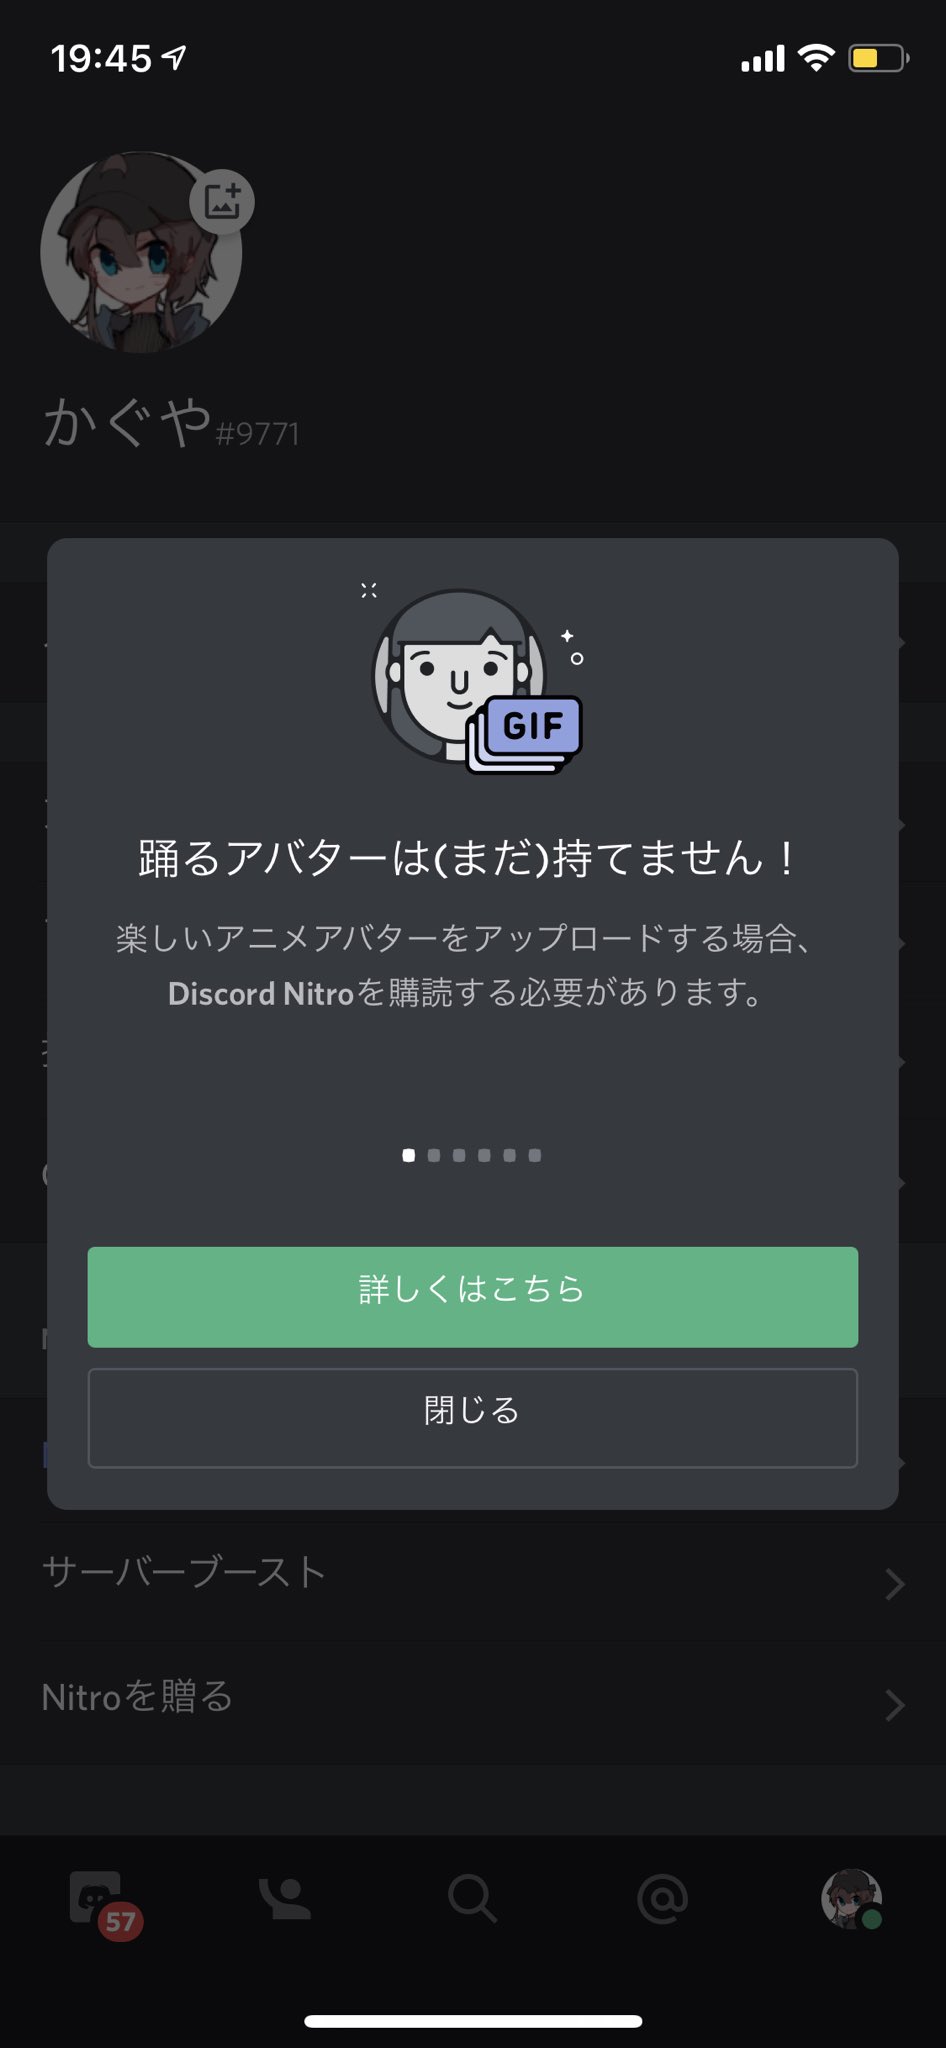 Discord Japan Gqrnetfps アニメーションアバターにするには 通知に表示されております通りnitroをご検討いただけますと幸いです T Co L1jj7leuyg Twitter